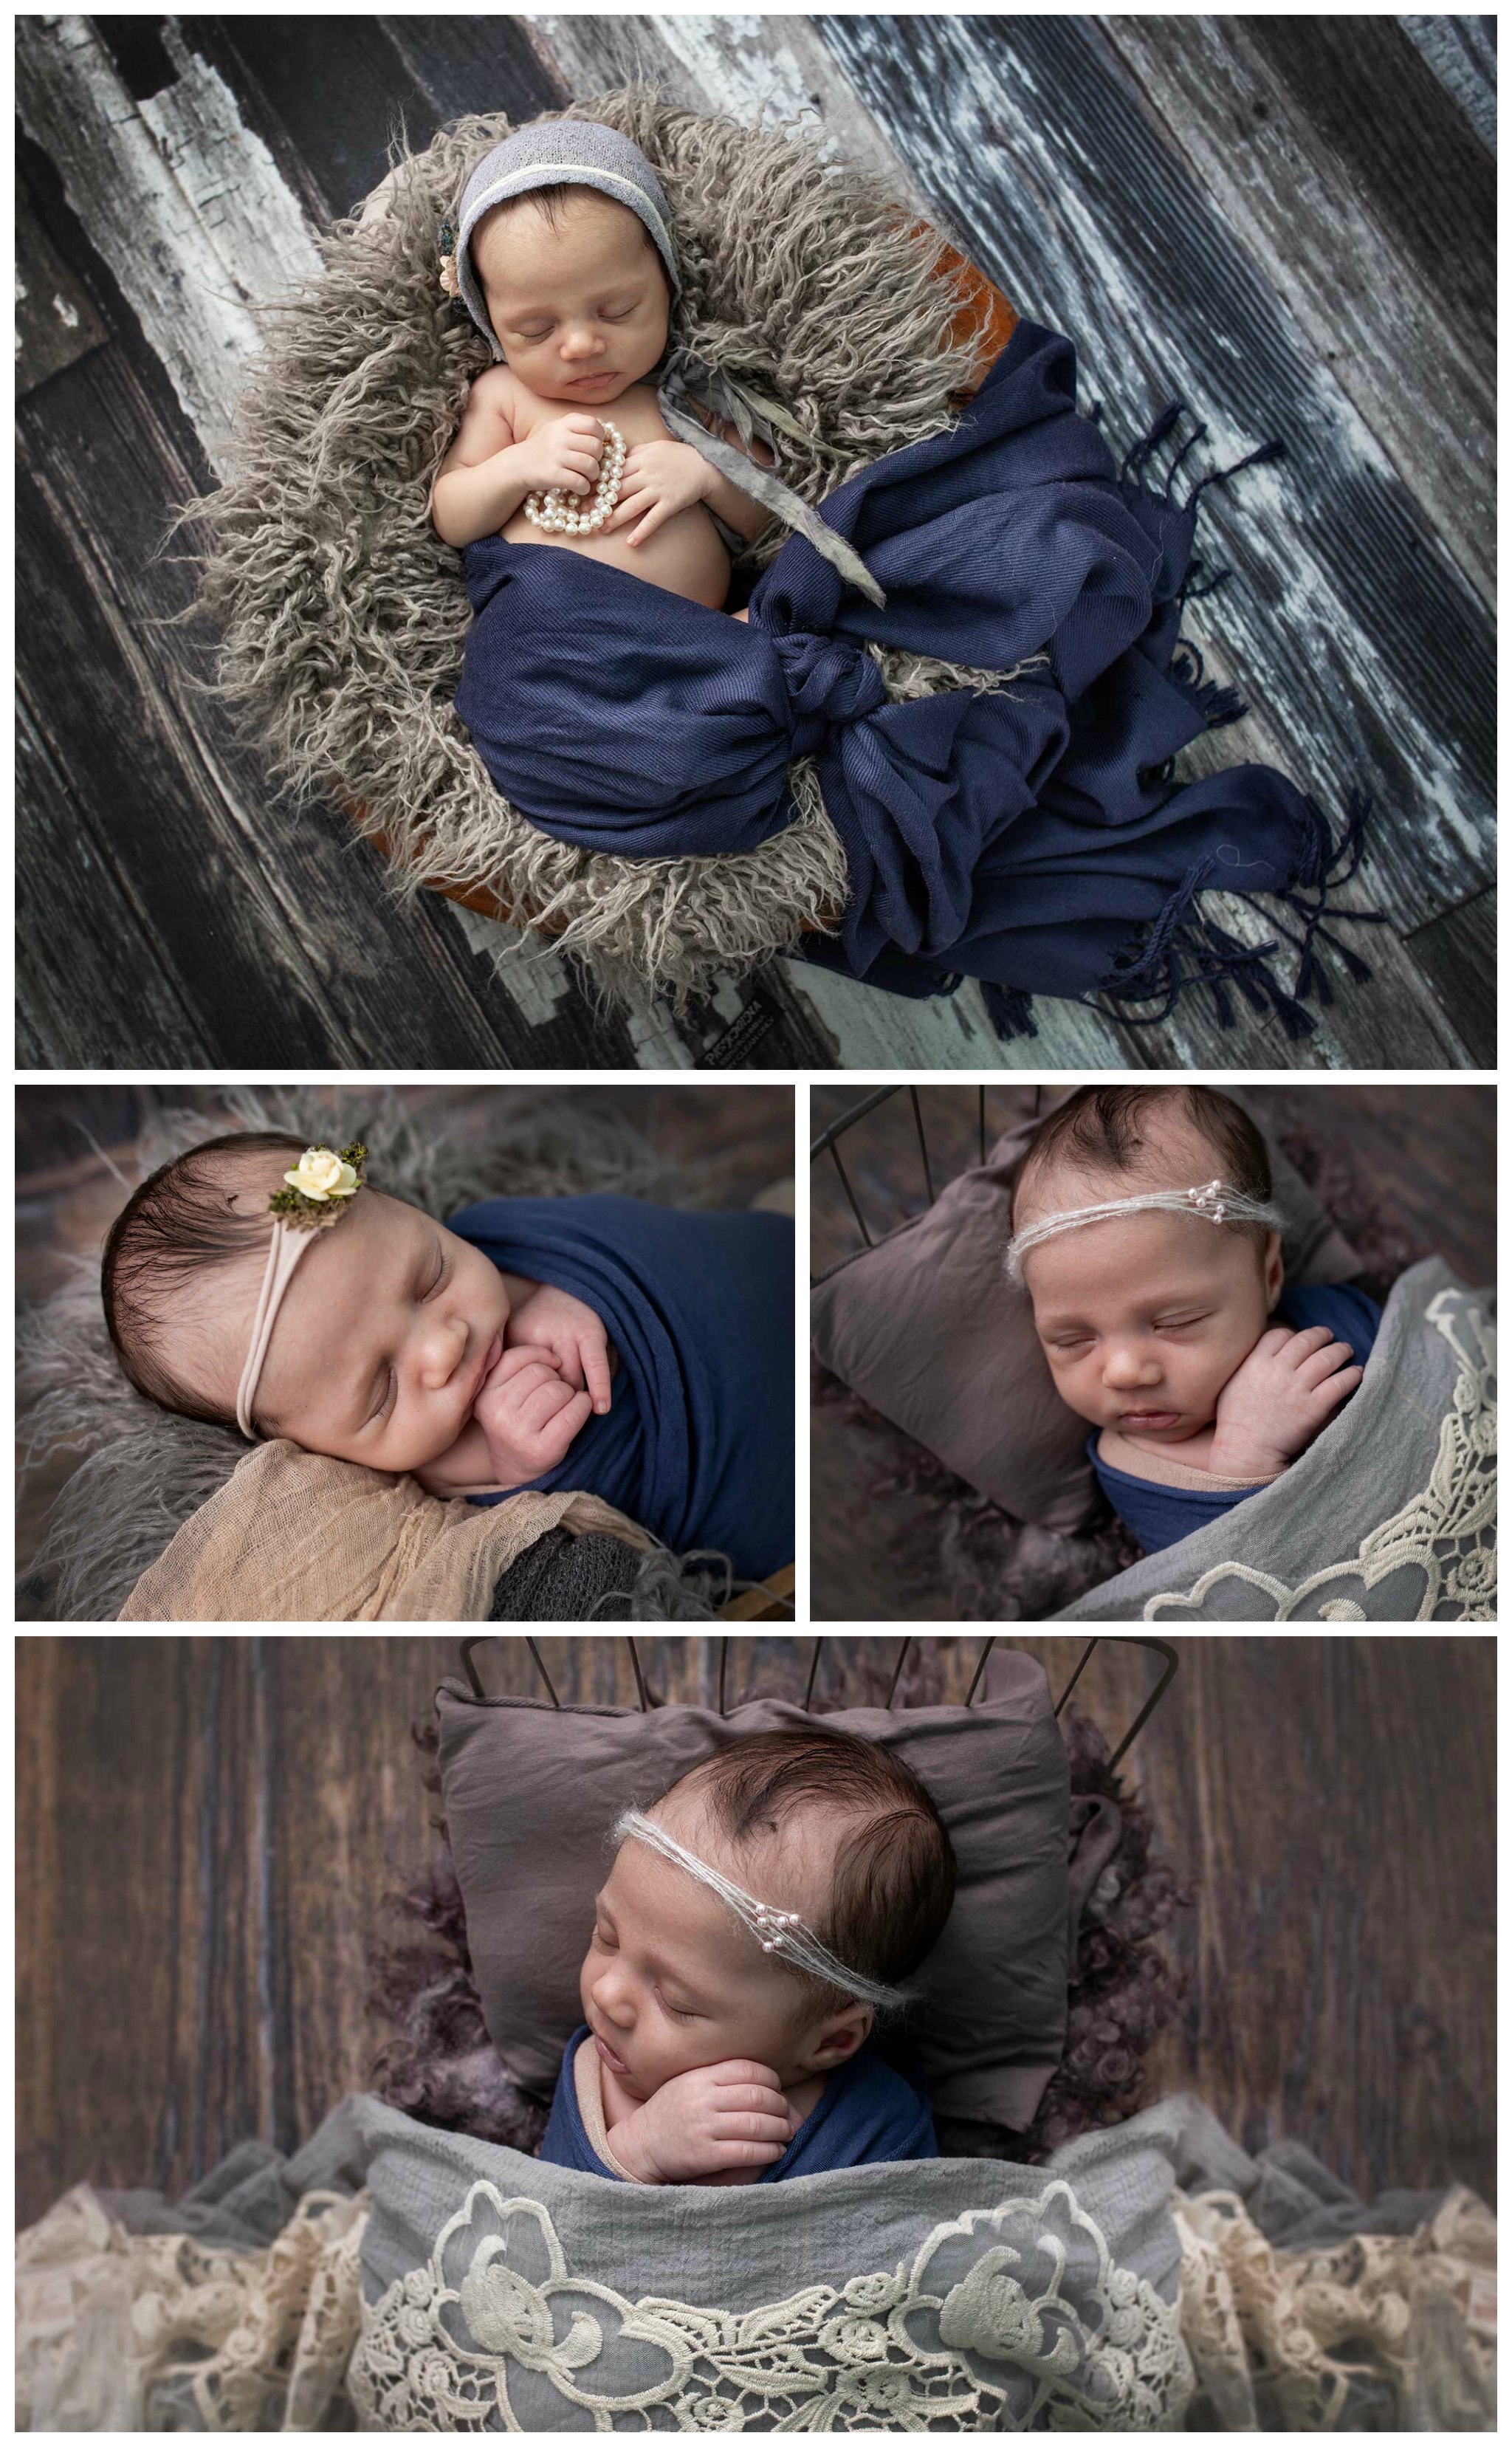 Newborn girl photo session | newborn photographer in Wylie tx | #FamilyPortraitsWylie #MaternityPhotographerWylie #MaternityPhotography  #NewbornPhotographerWylie #NewbornGirlPhotographyDallas #LDPortraits #YouAreMyHeart